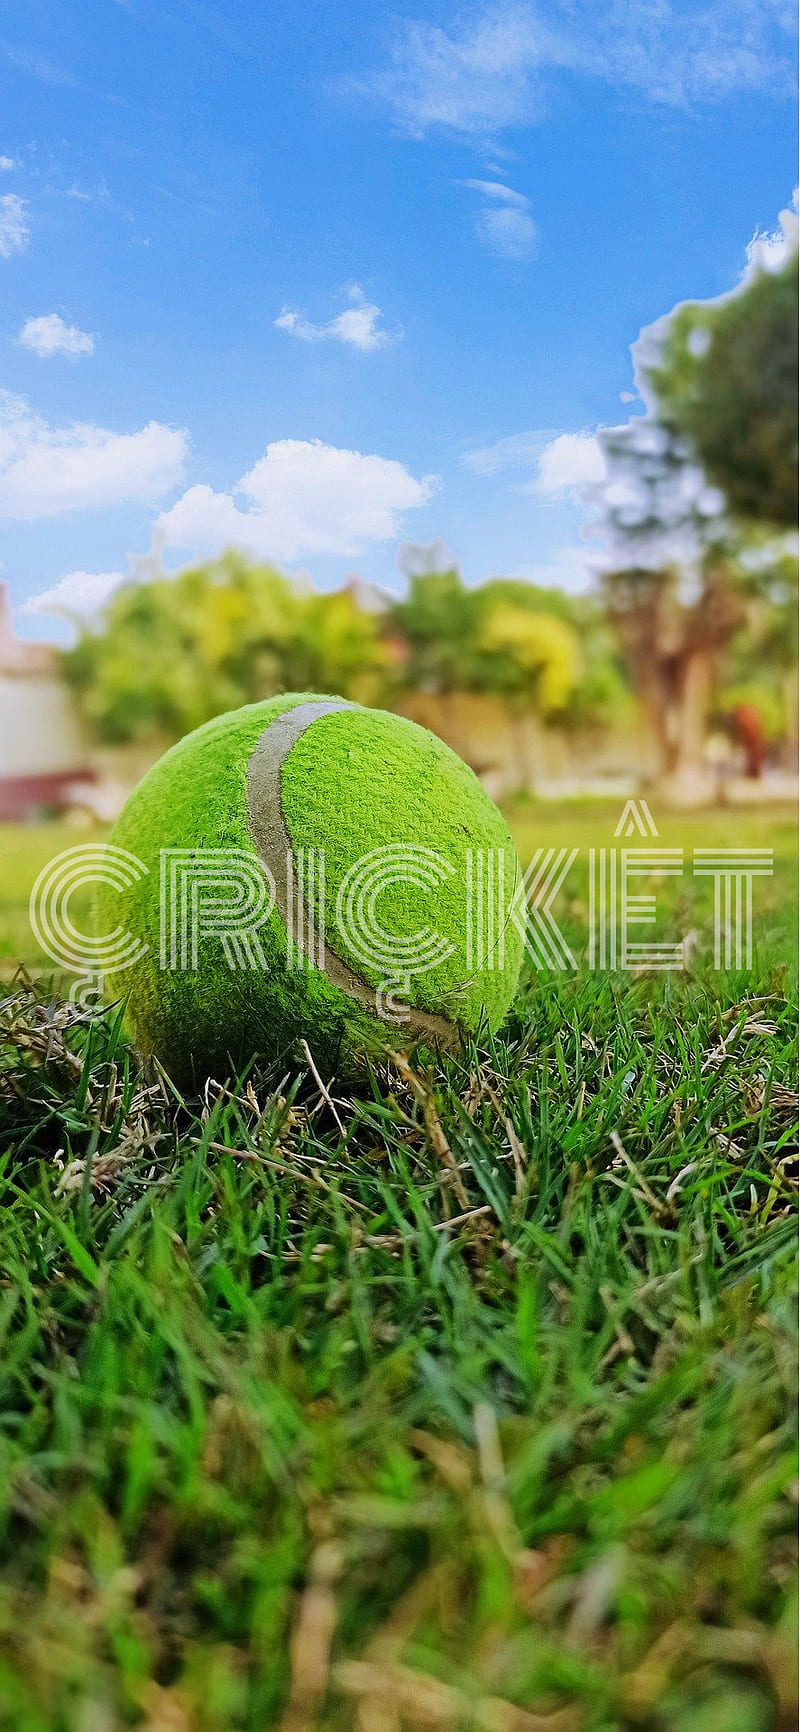 Cricket ball, bat, HD phone wallpaper | Peakpx